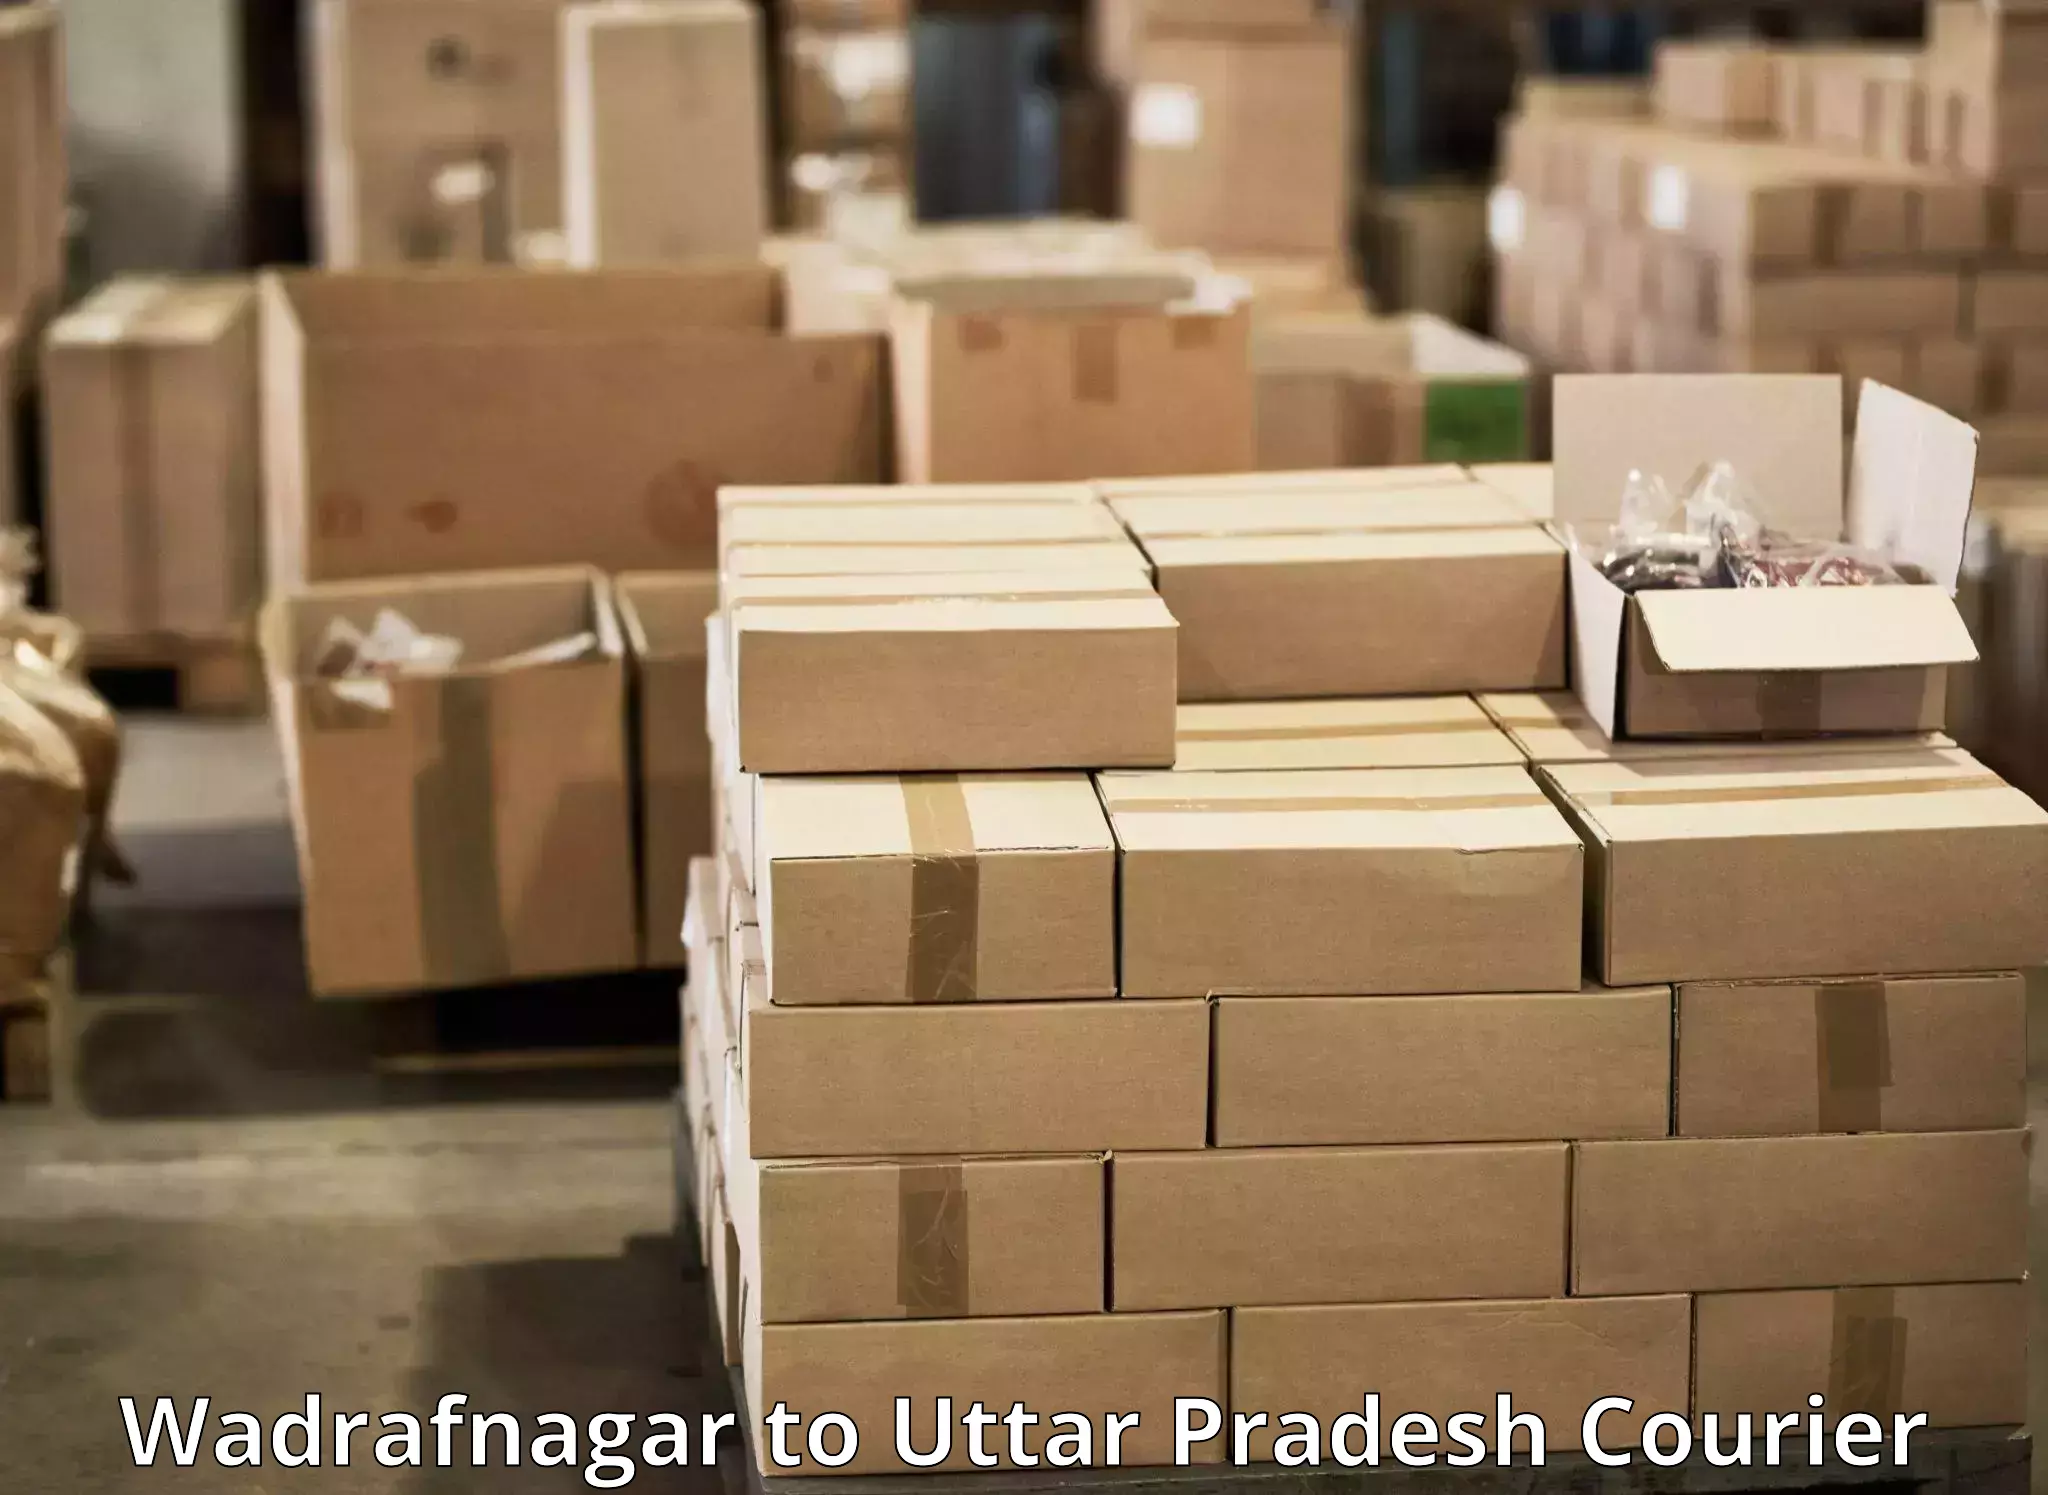 Fast shipping solutions Wadrafnagar to Nighasan